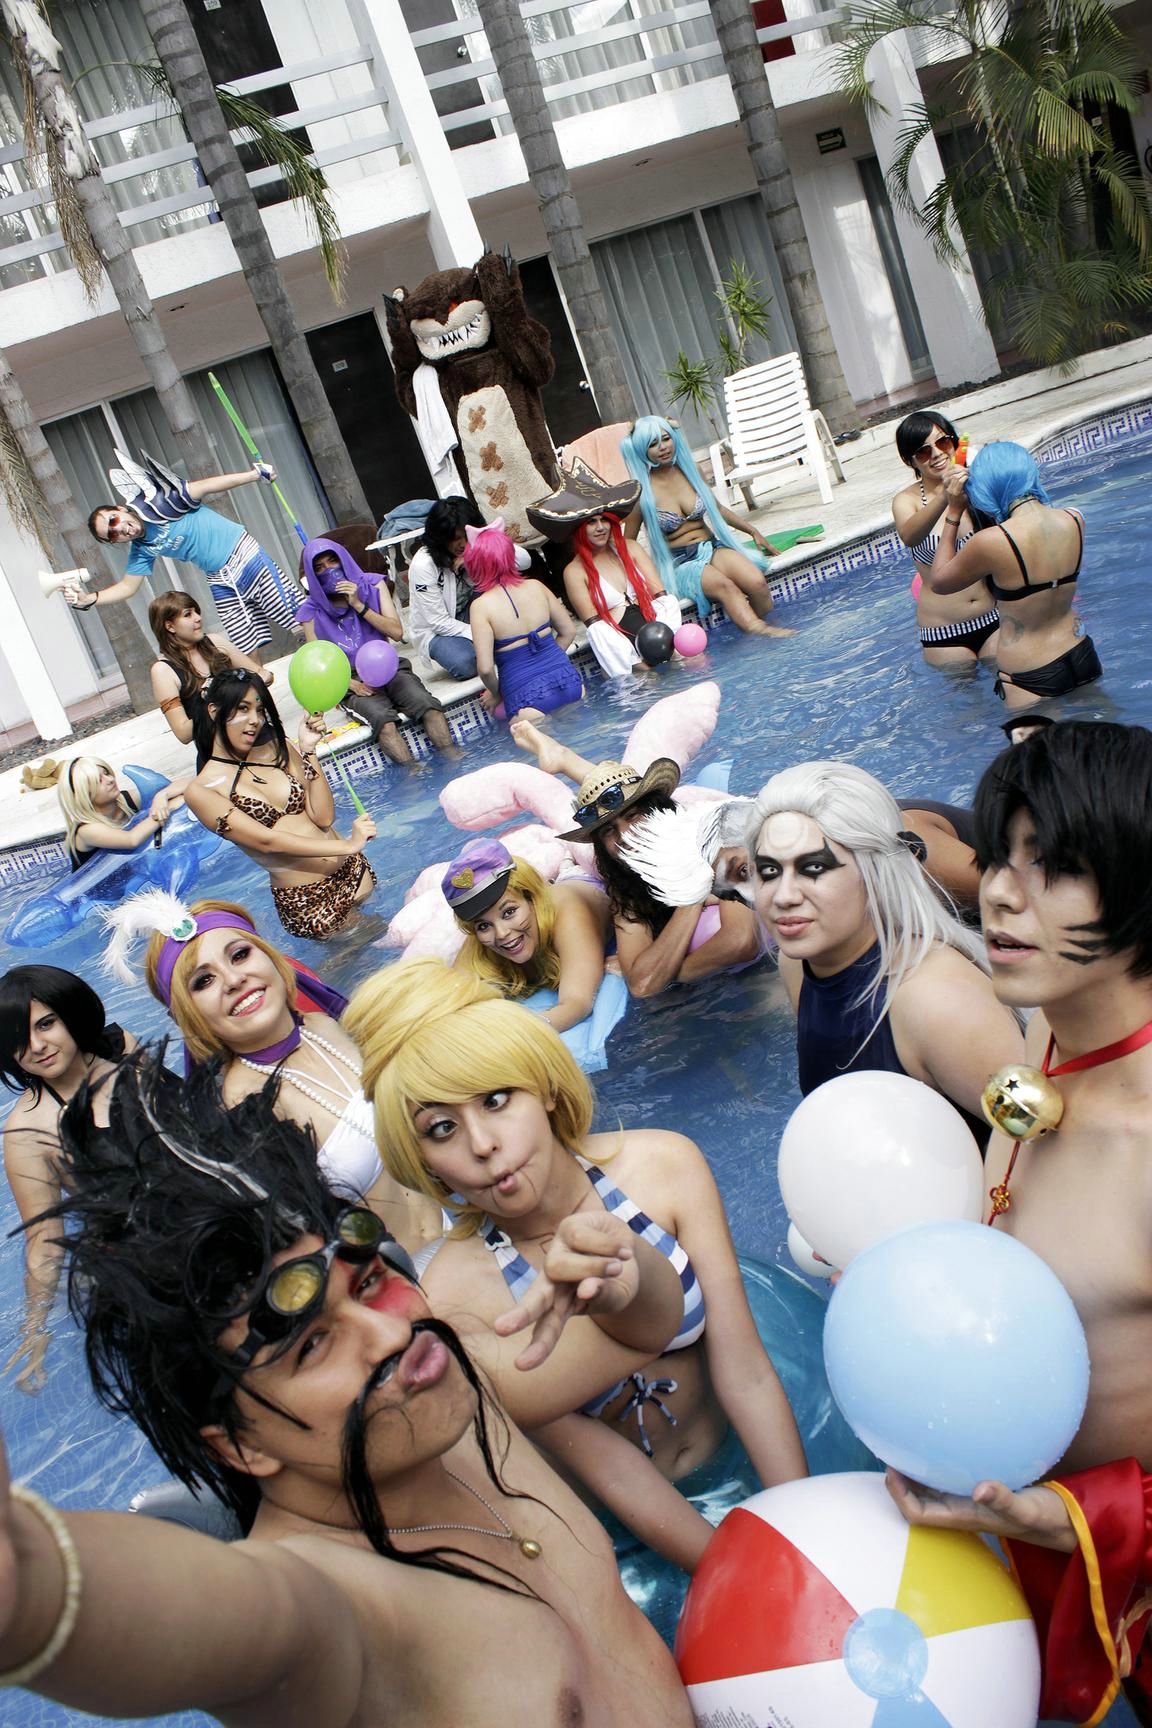 Mát rượi cùng bộ sưu tập ảnh cosplay Tiệc bể bơi của LMHT